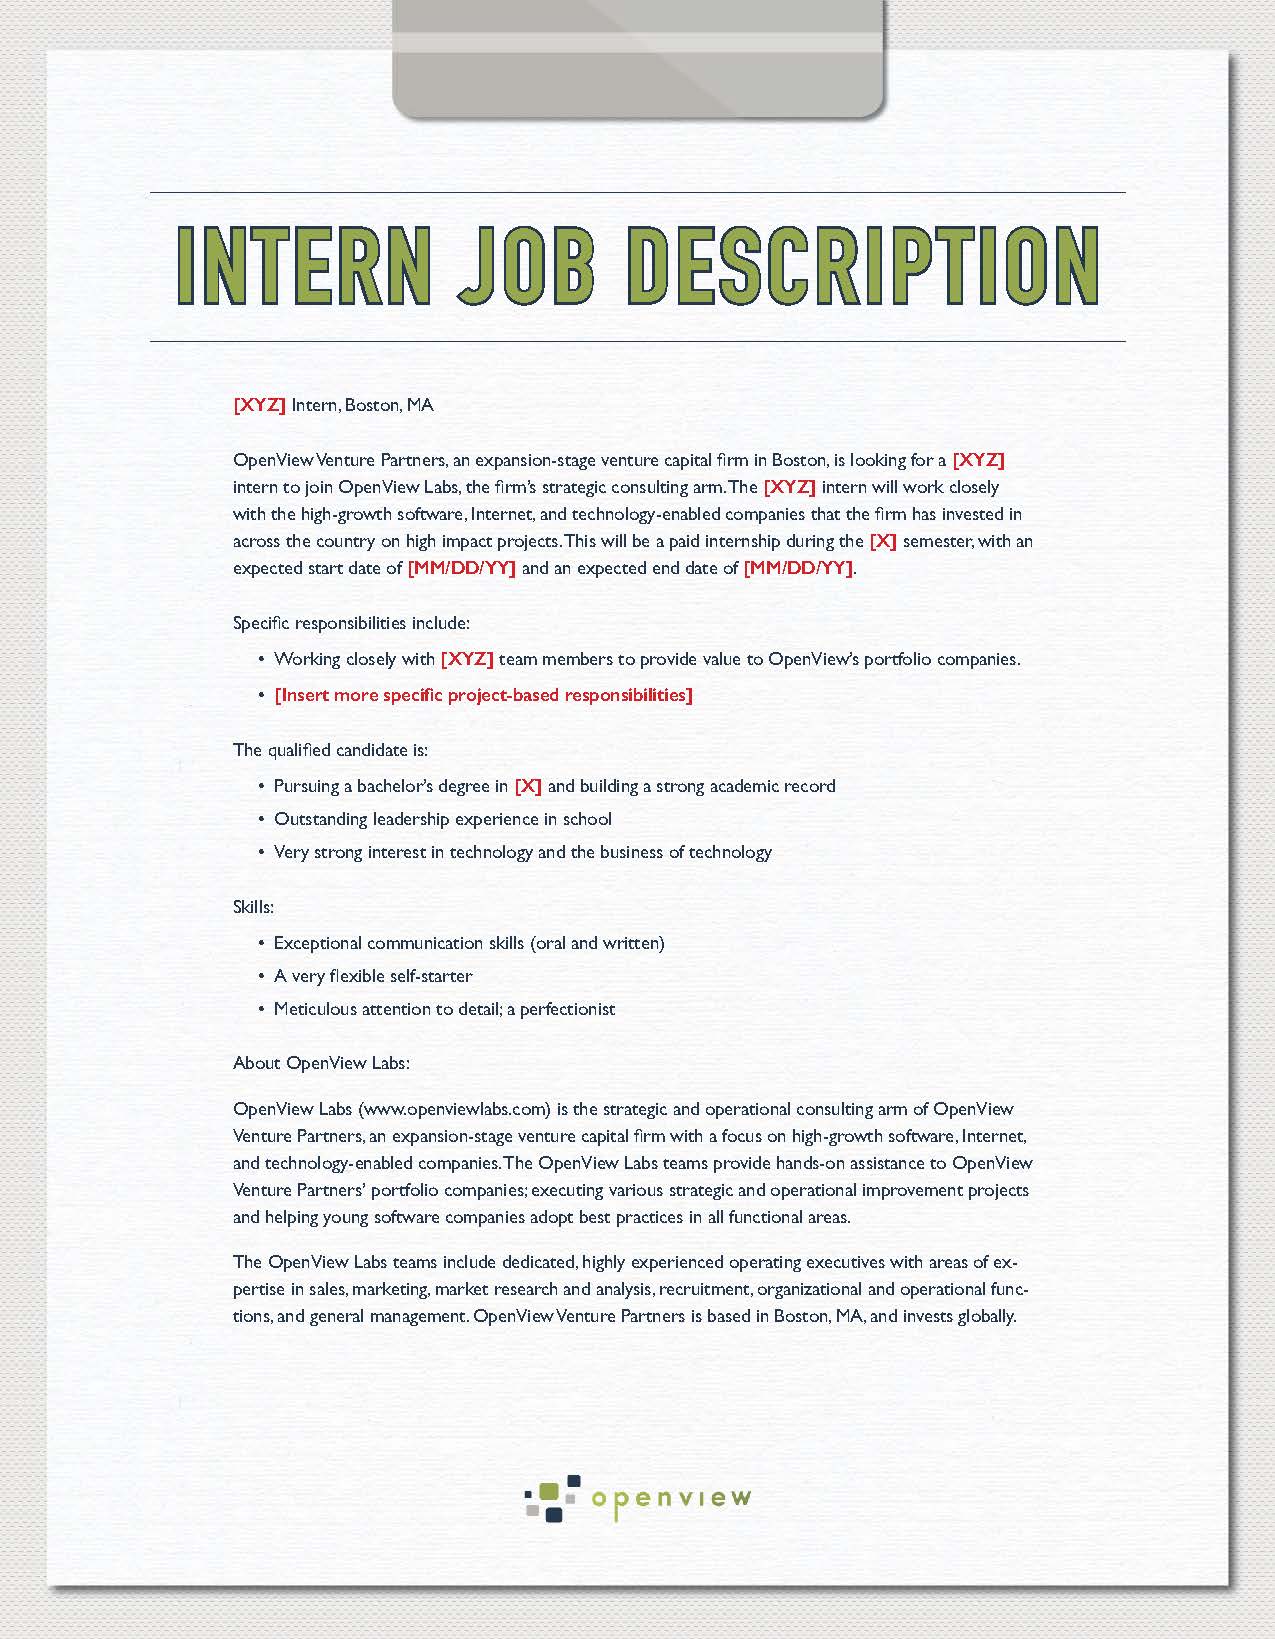 Blogging internship job description